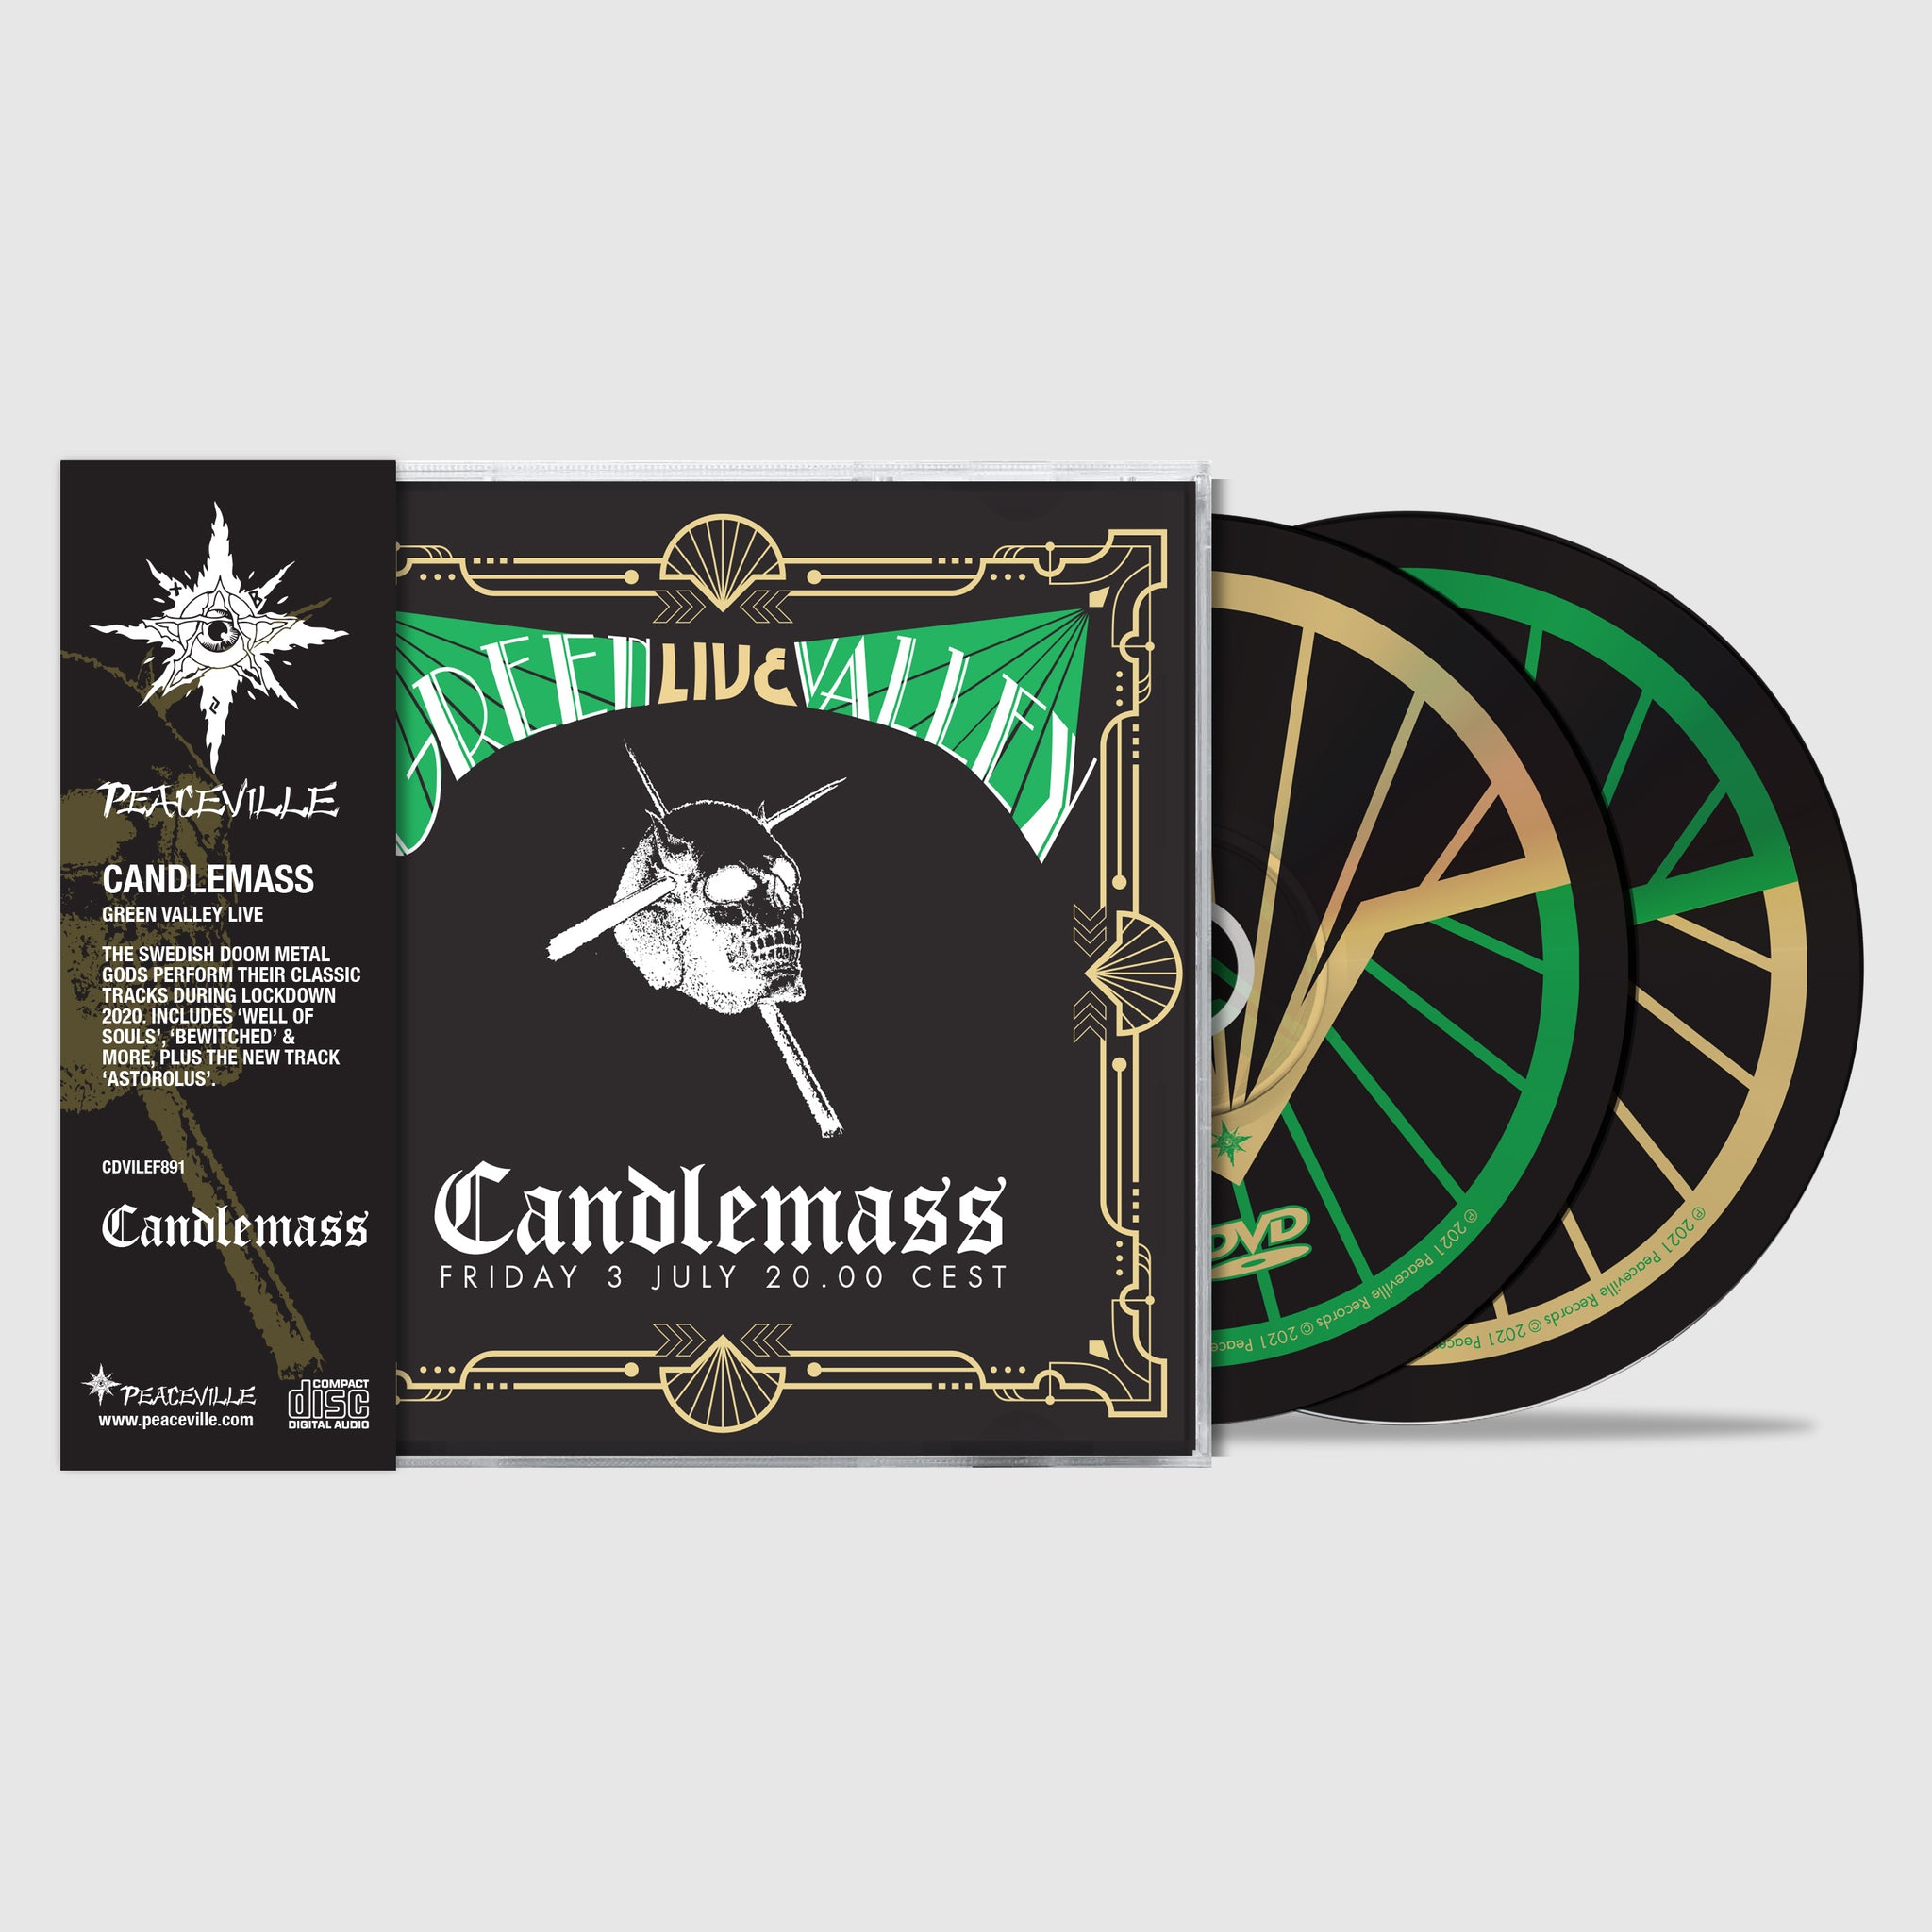 Candlemass "Green Valley Live" CD/DVD